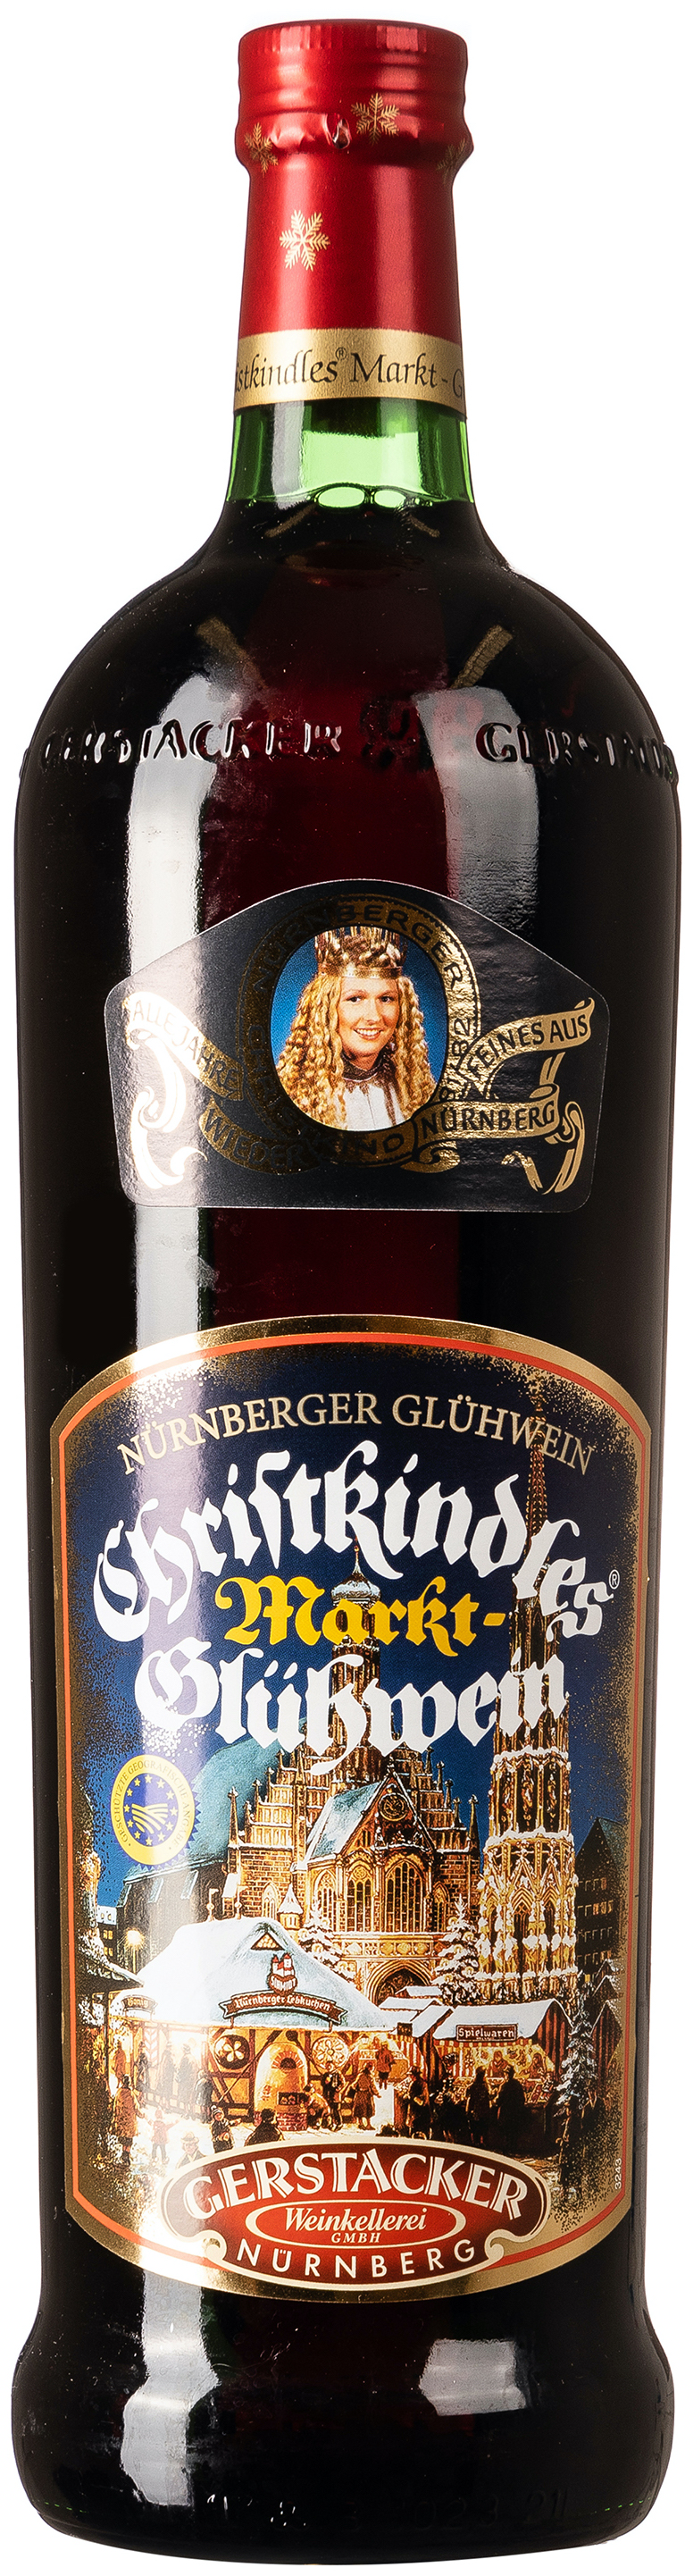 Gerstacker Nürnberger Christkindles Markt Glühwein 10% vol. 1,0L